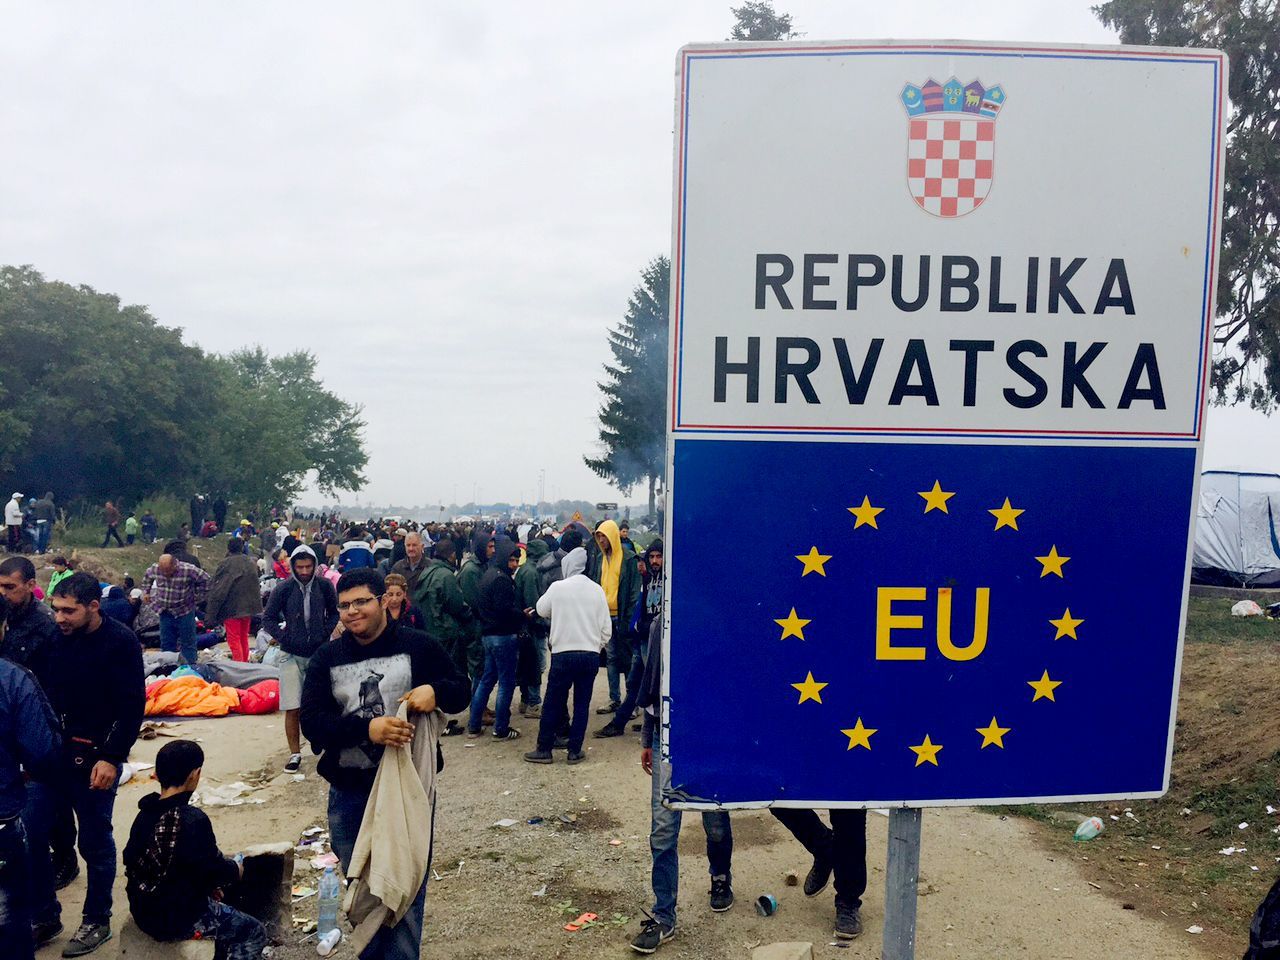 Chorvatsko-srbská hranice - uprchlíci